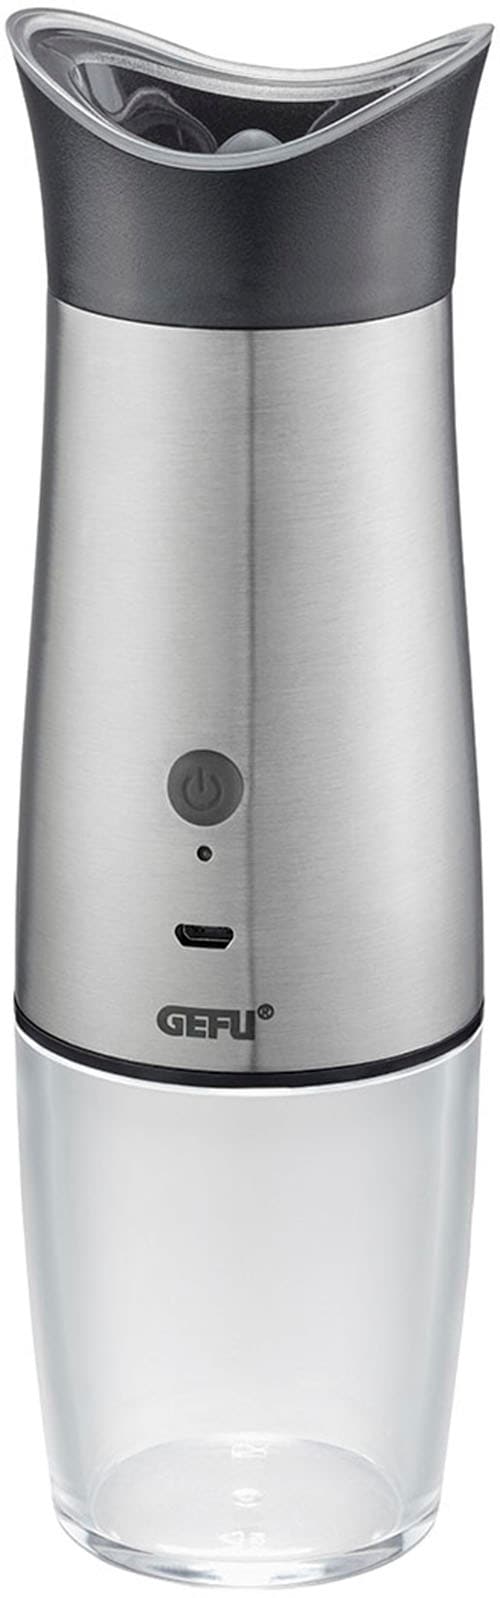 GEFU 34617 Salz- oder Pfeffermühle VELO, elektrisch mit Kippsensor USB, Gewürzmühle, Salzmühle, verstellbares Keramikmahlwerk